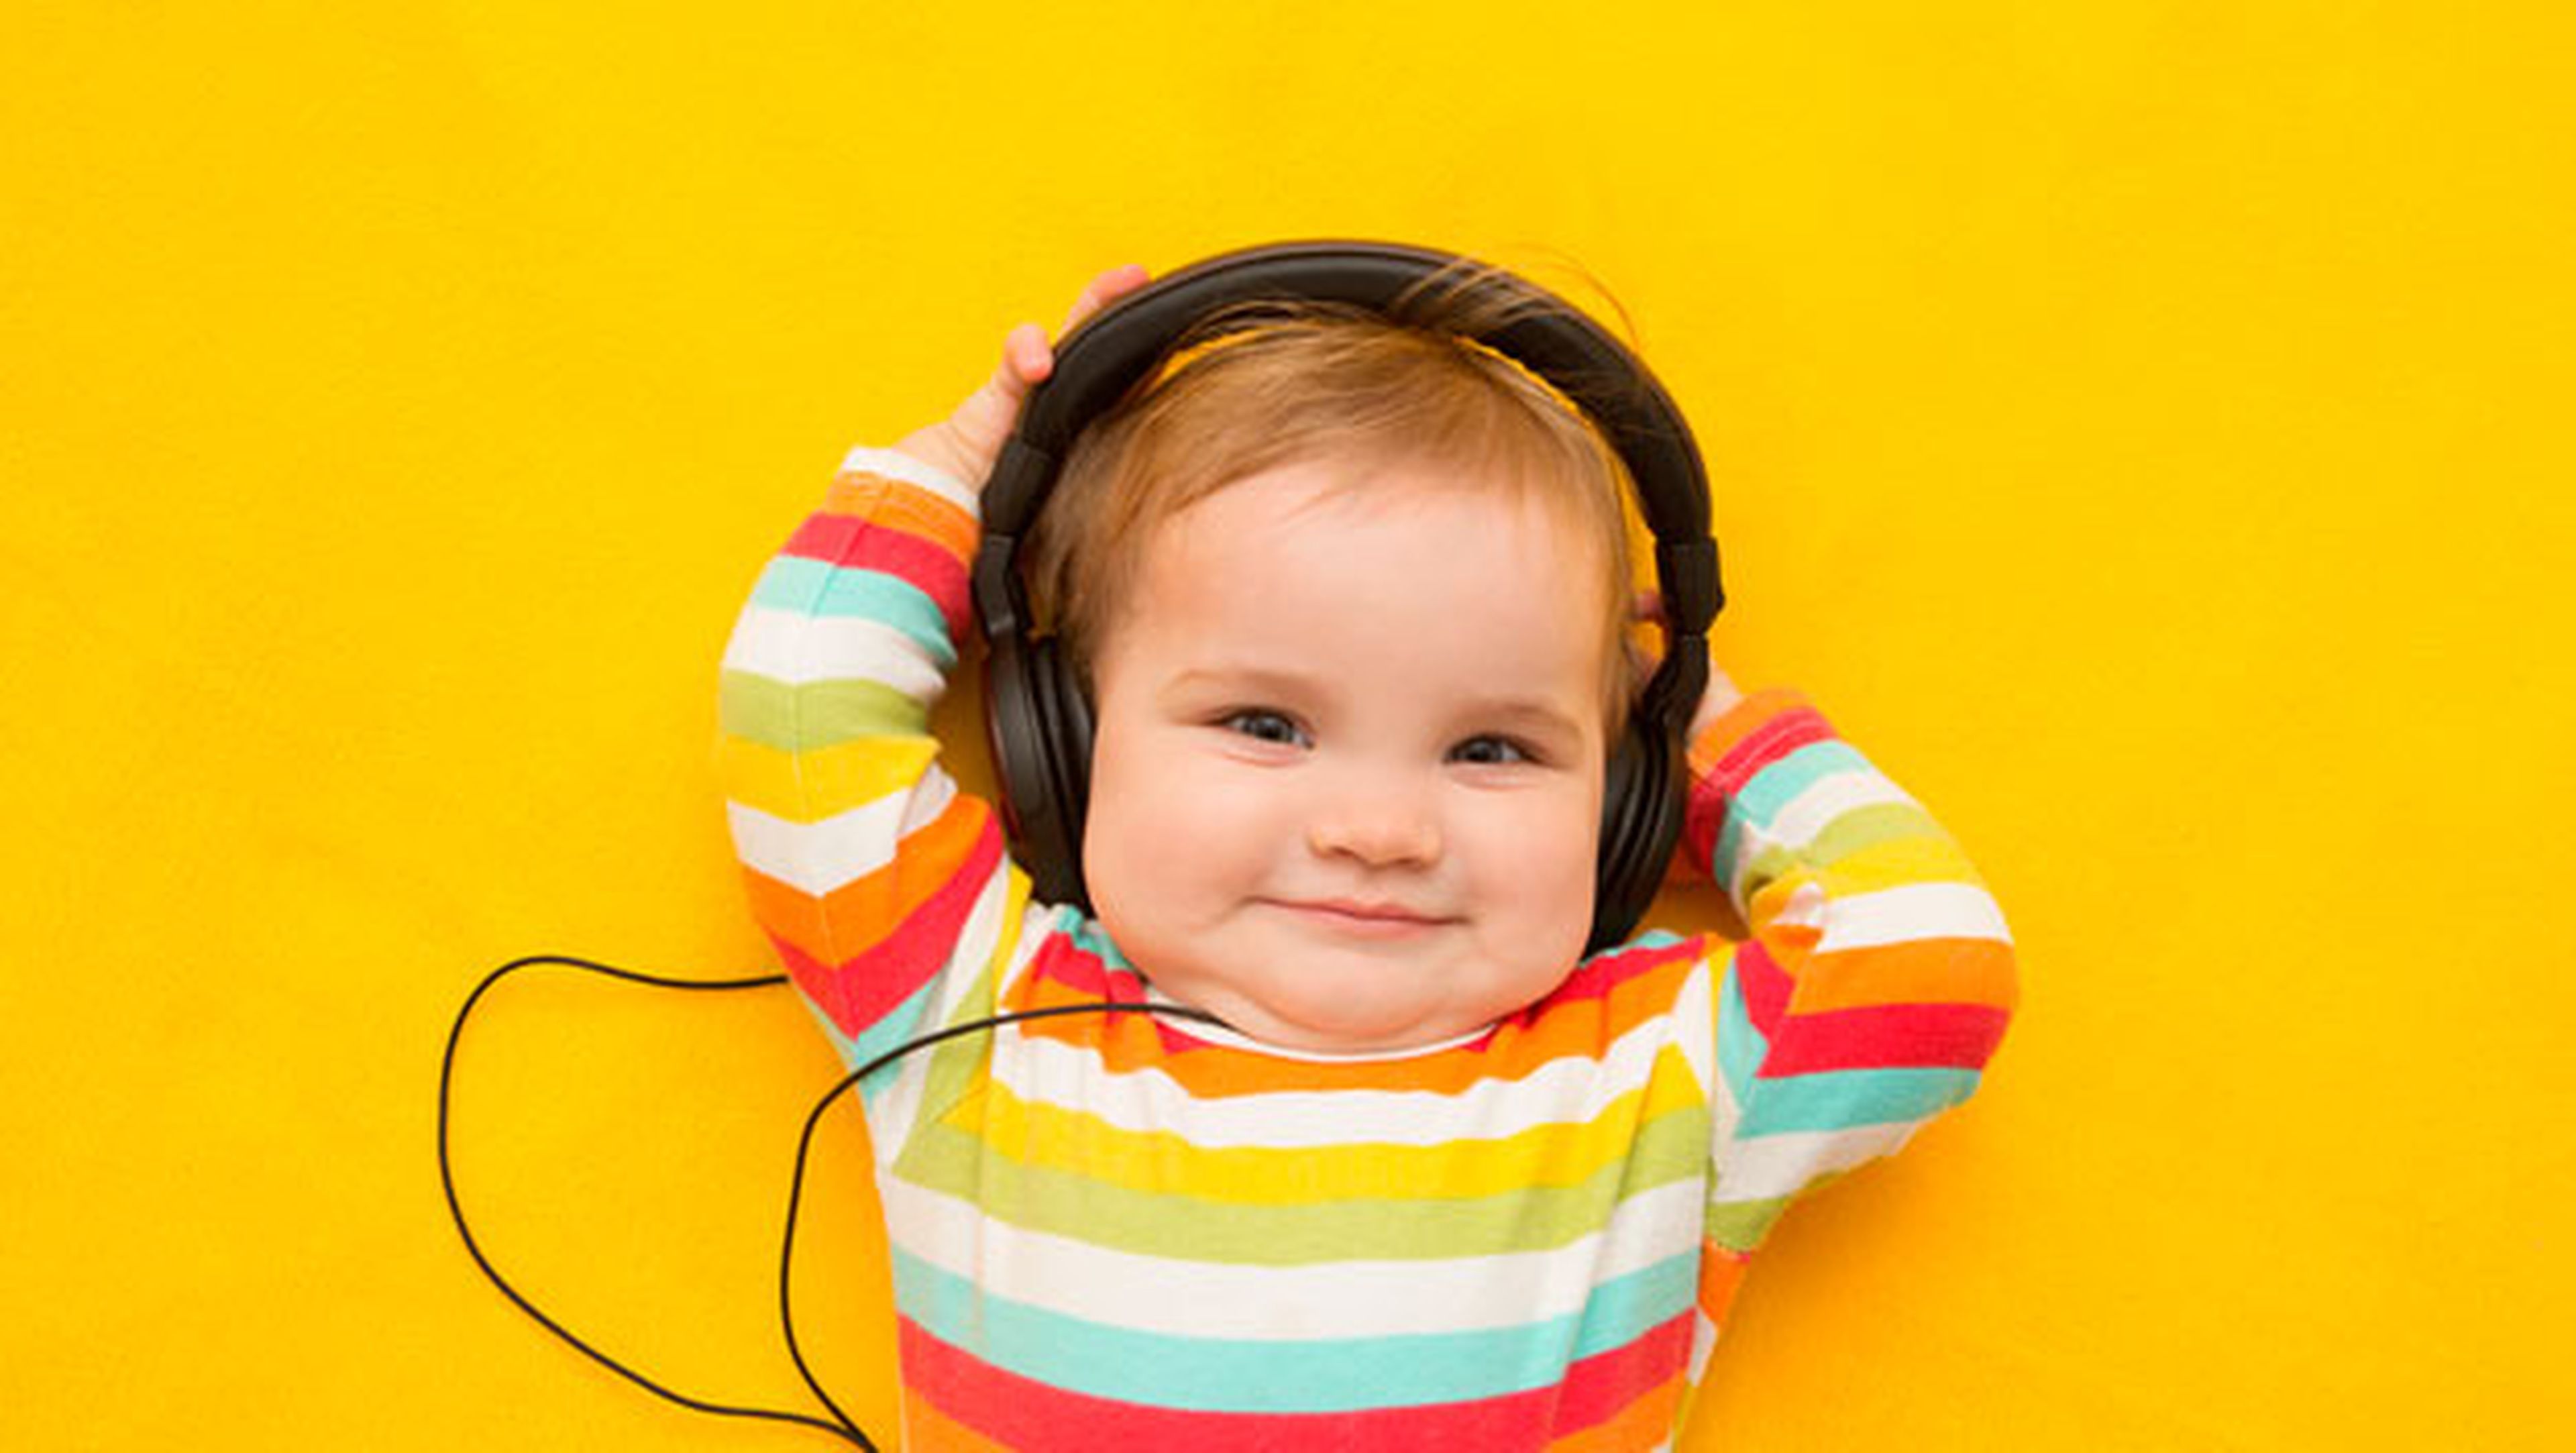 Extinto Exitoso sin cable Esta canción hace felices a los bebés, según la ciencia | Computer Hoy